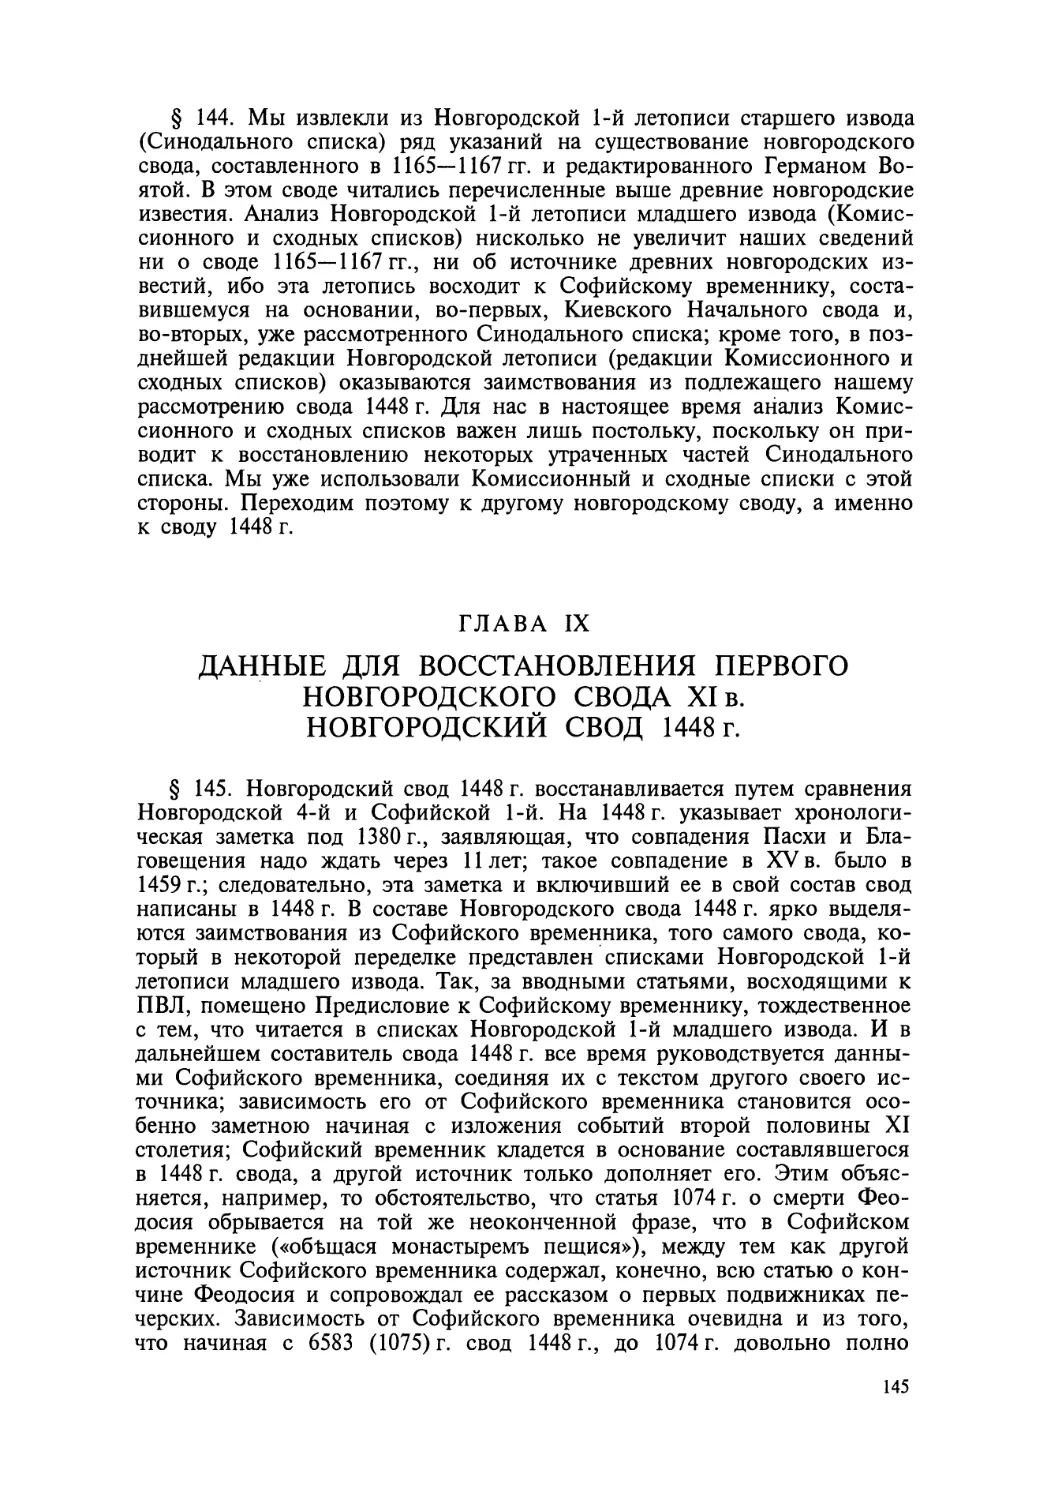 Глава IX. Данные для восстановления первого Новгородского свода XI в. Новгородский свод 1448 г